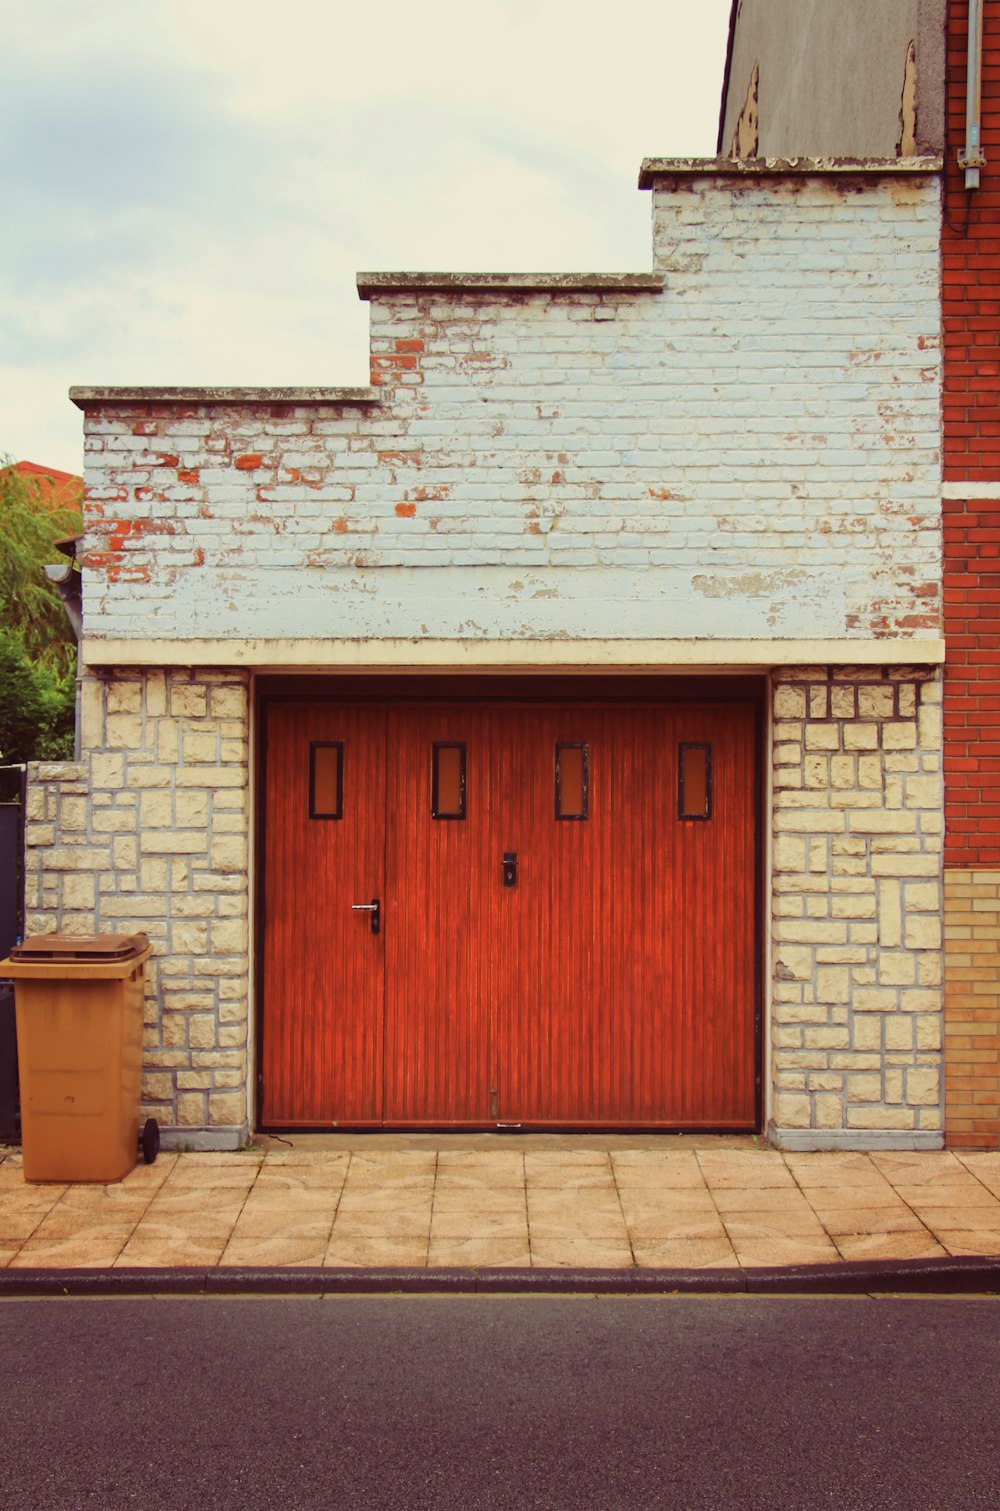 Ein Backsteingebäude mit einer roten Tür und einem Mülleimer